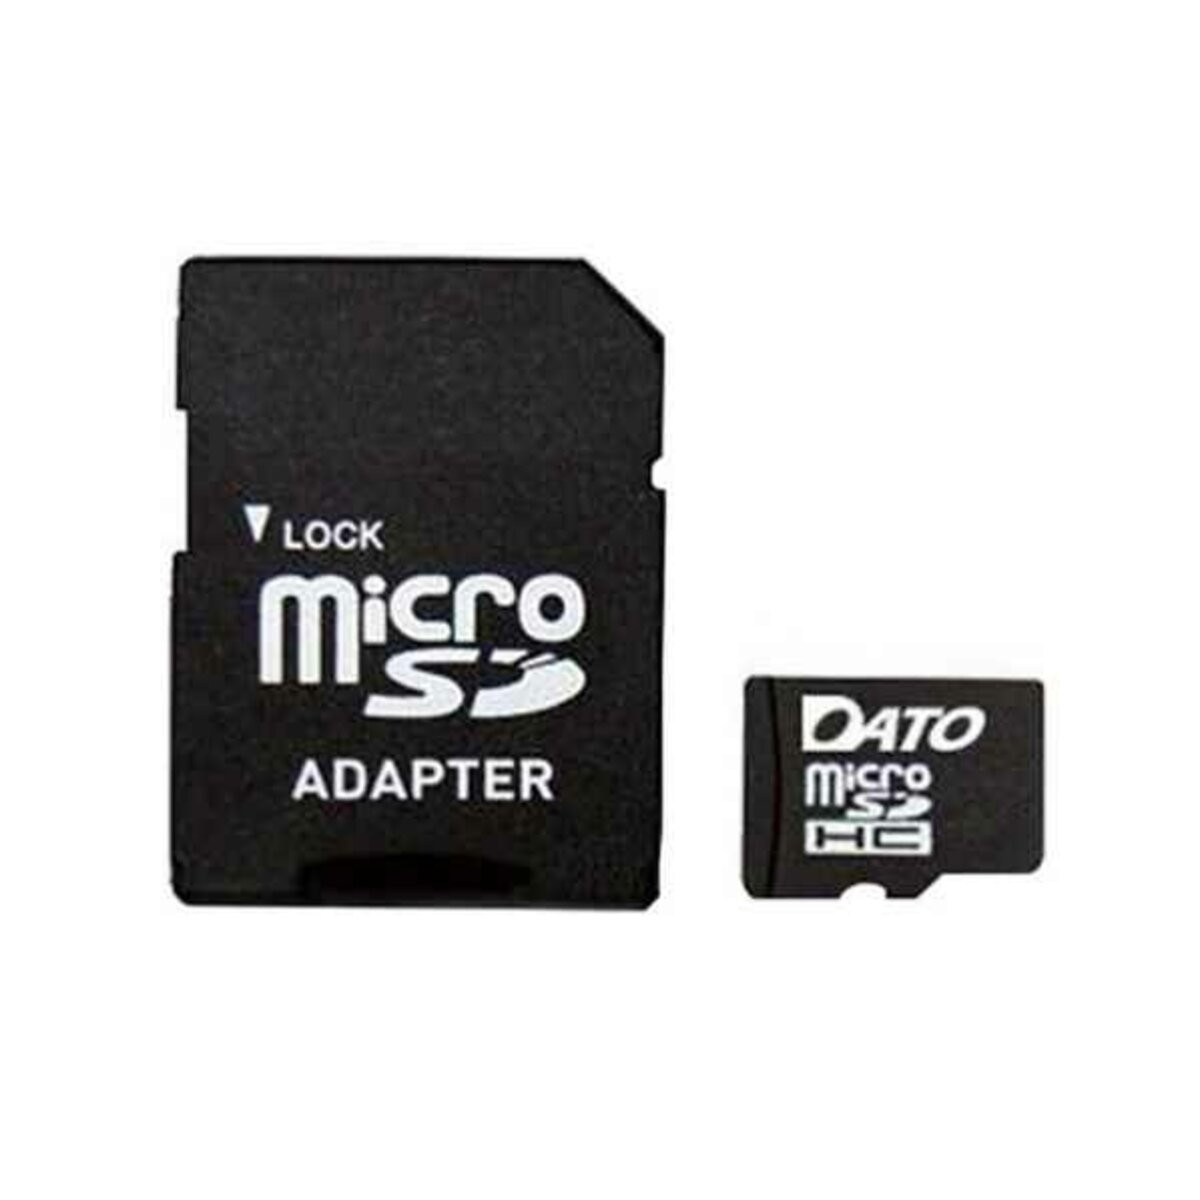 microSDHC DATO 4Gb class 4 (adapter SD) - 1